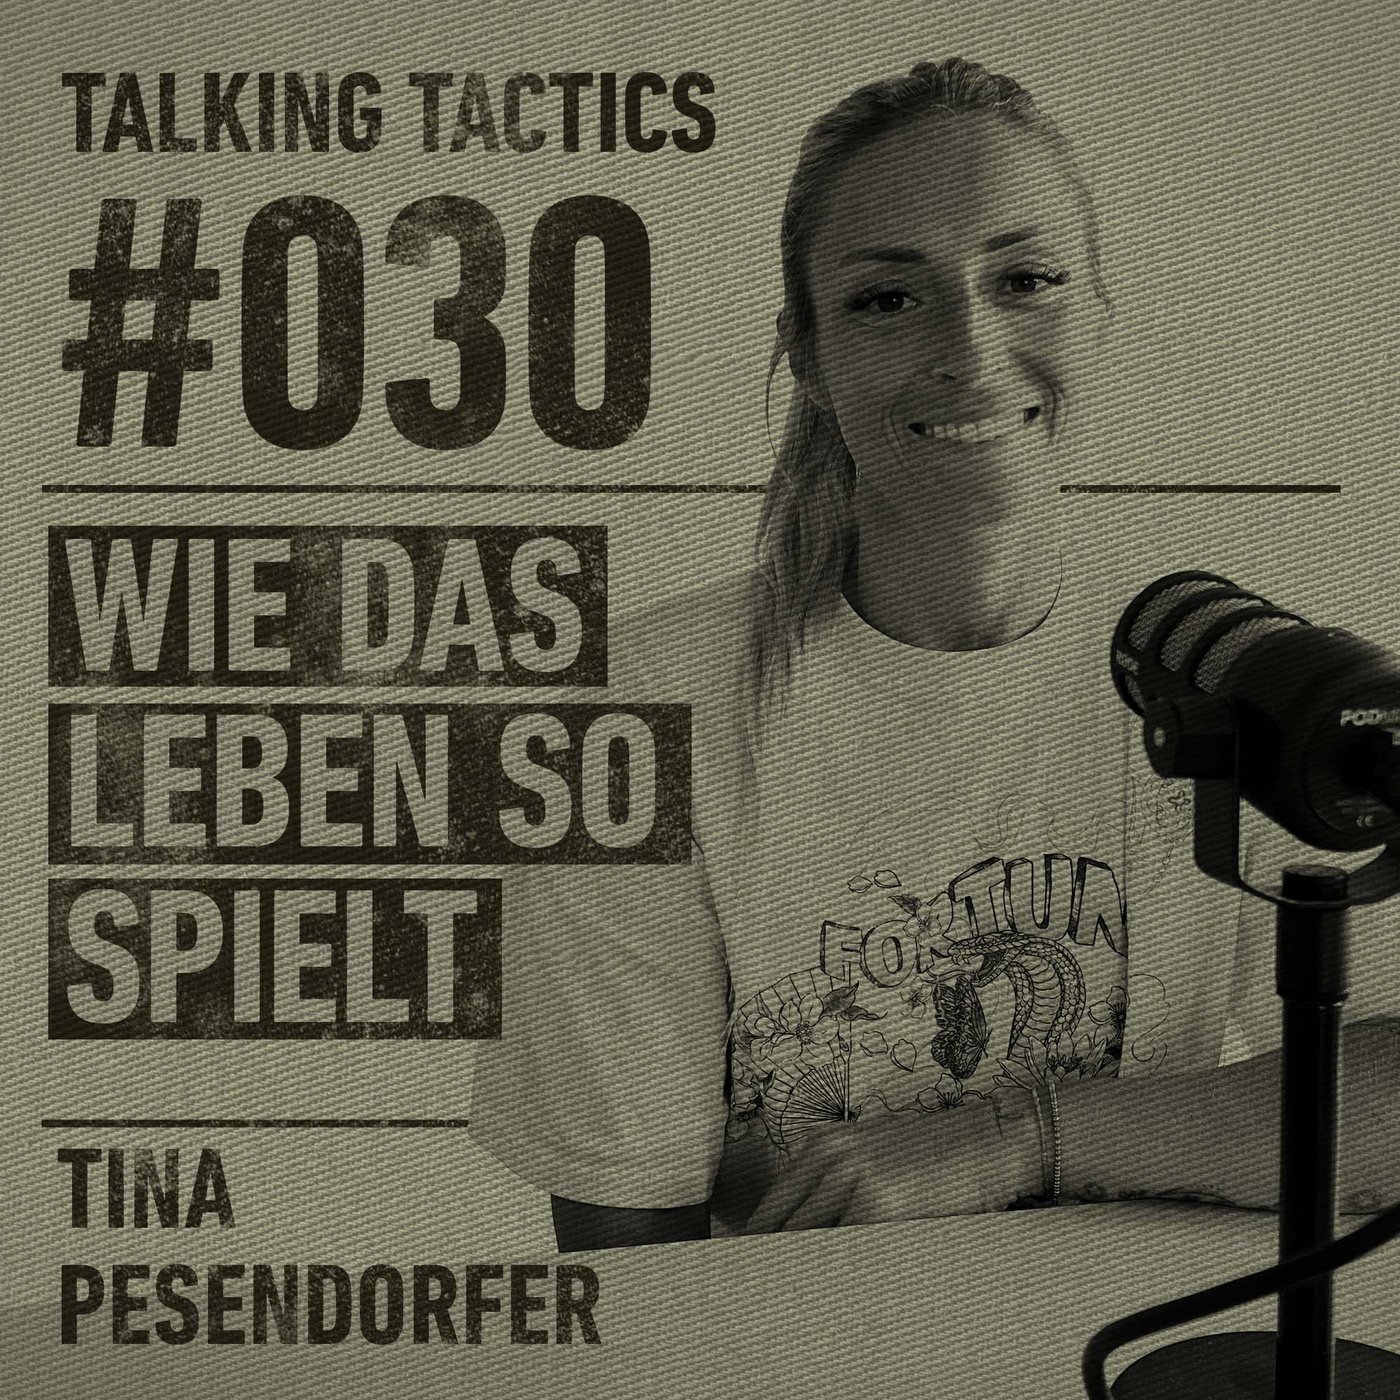 #30 - Tina Pesendorfer